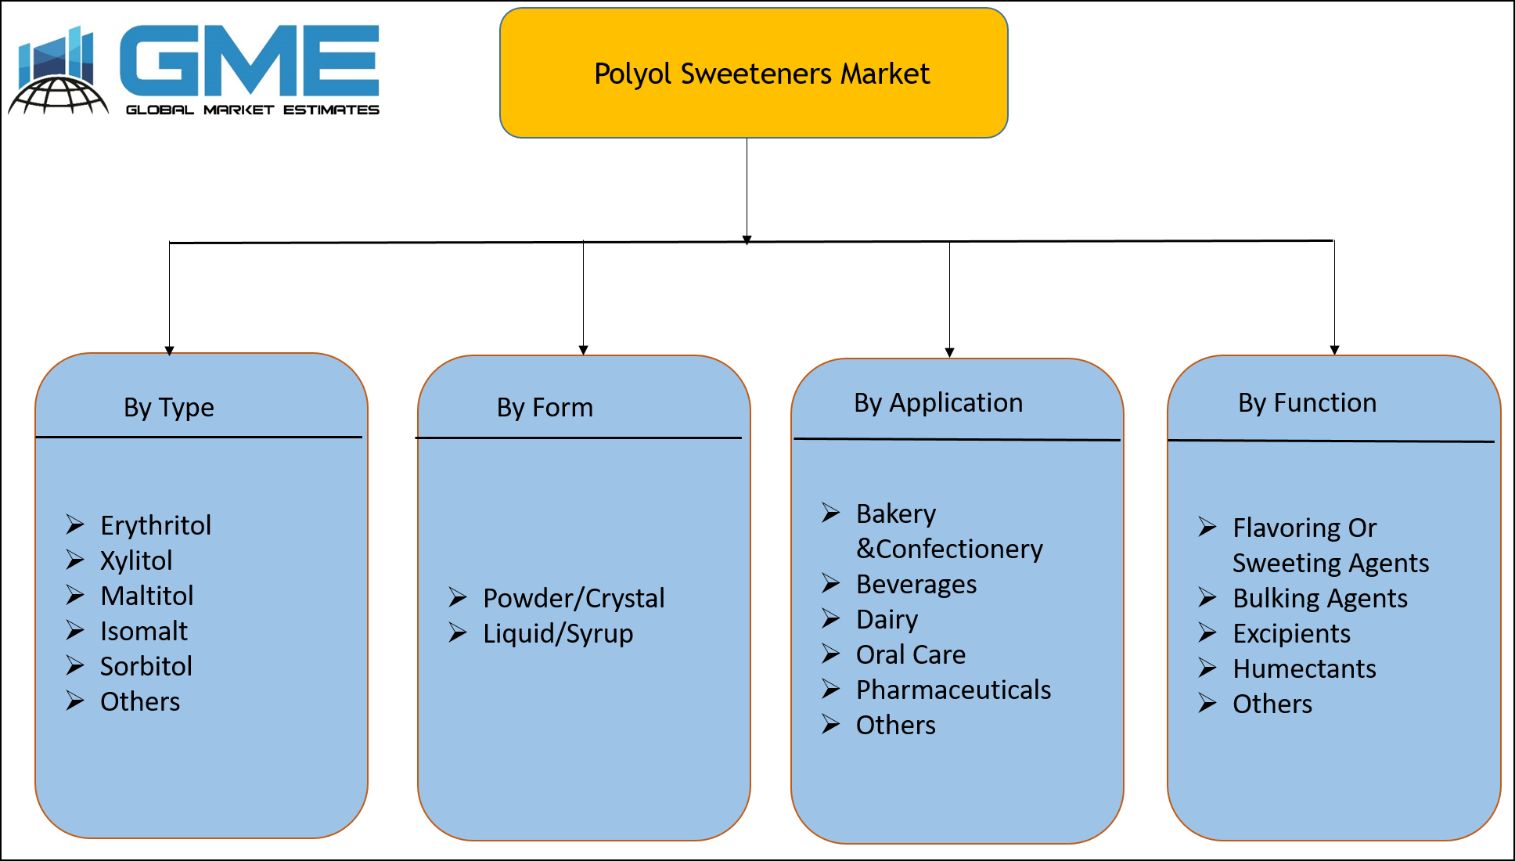 Polyol Sweeteners Market